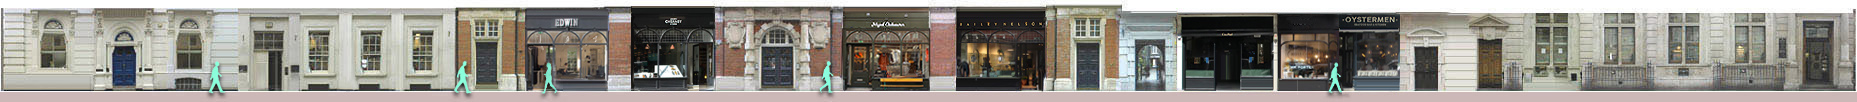 Henrietta Street shops: Edwin jeans, Cheaney shoes, Nigel Cabourn menswear, Oystermen